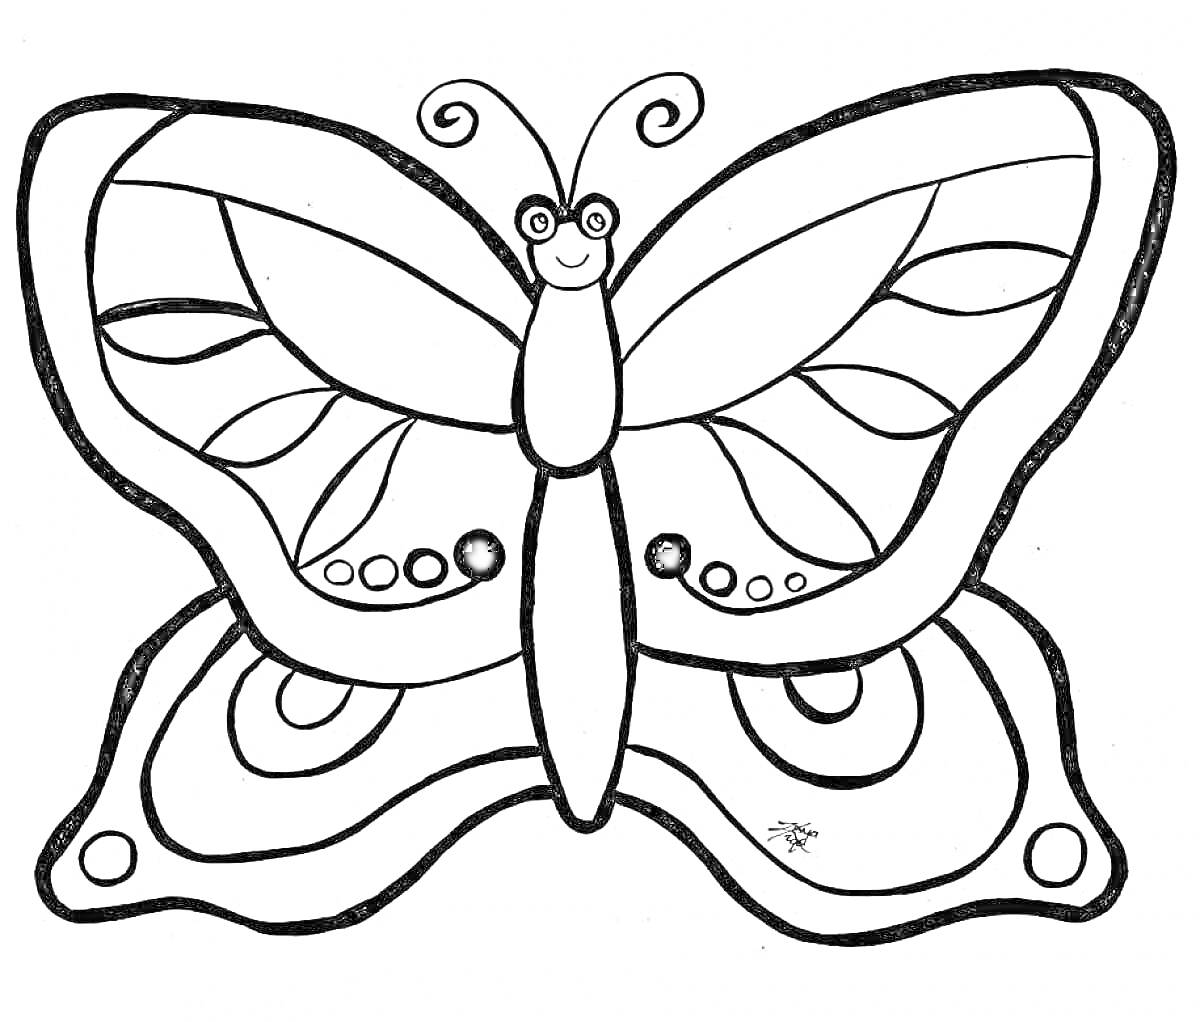 Раскраска Бабочка с узорами на крыльях и улыбающимся личиком